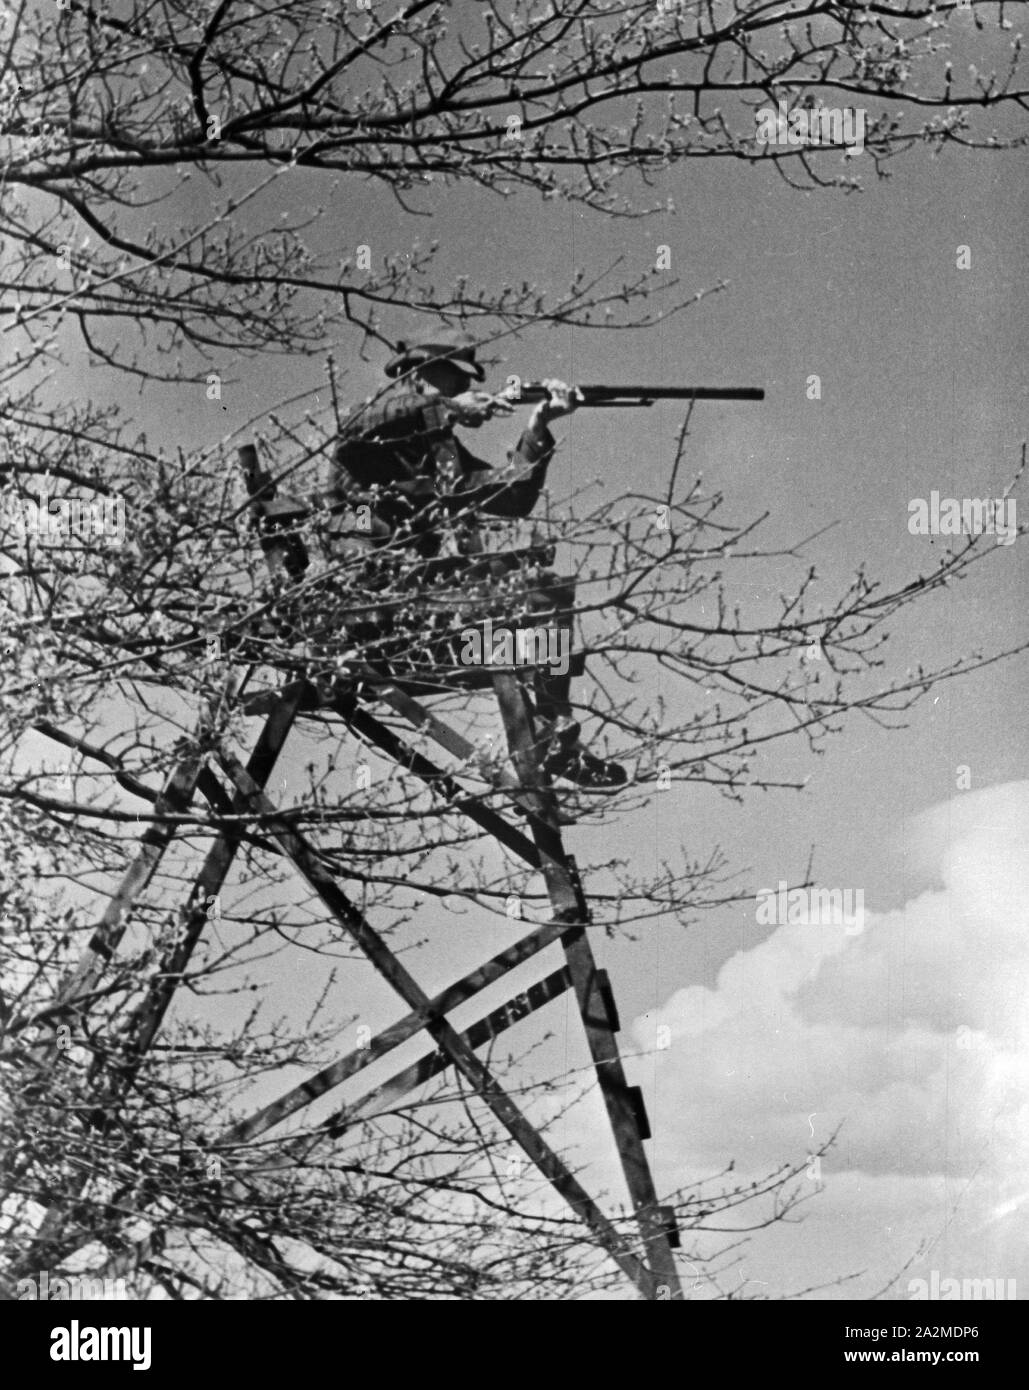 Reproduktion eines Fotos: Jäger schießt von seinem Hochsitz, Deutschland 1930er Jahre. Riproduzione di una fotografia: hunter riprese dalla sua posizione, Germania 1930s. Foto Stock